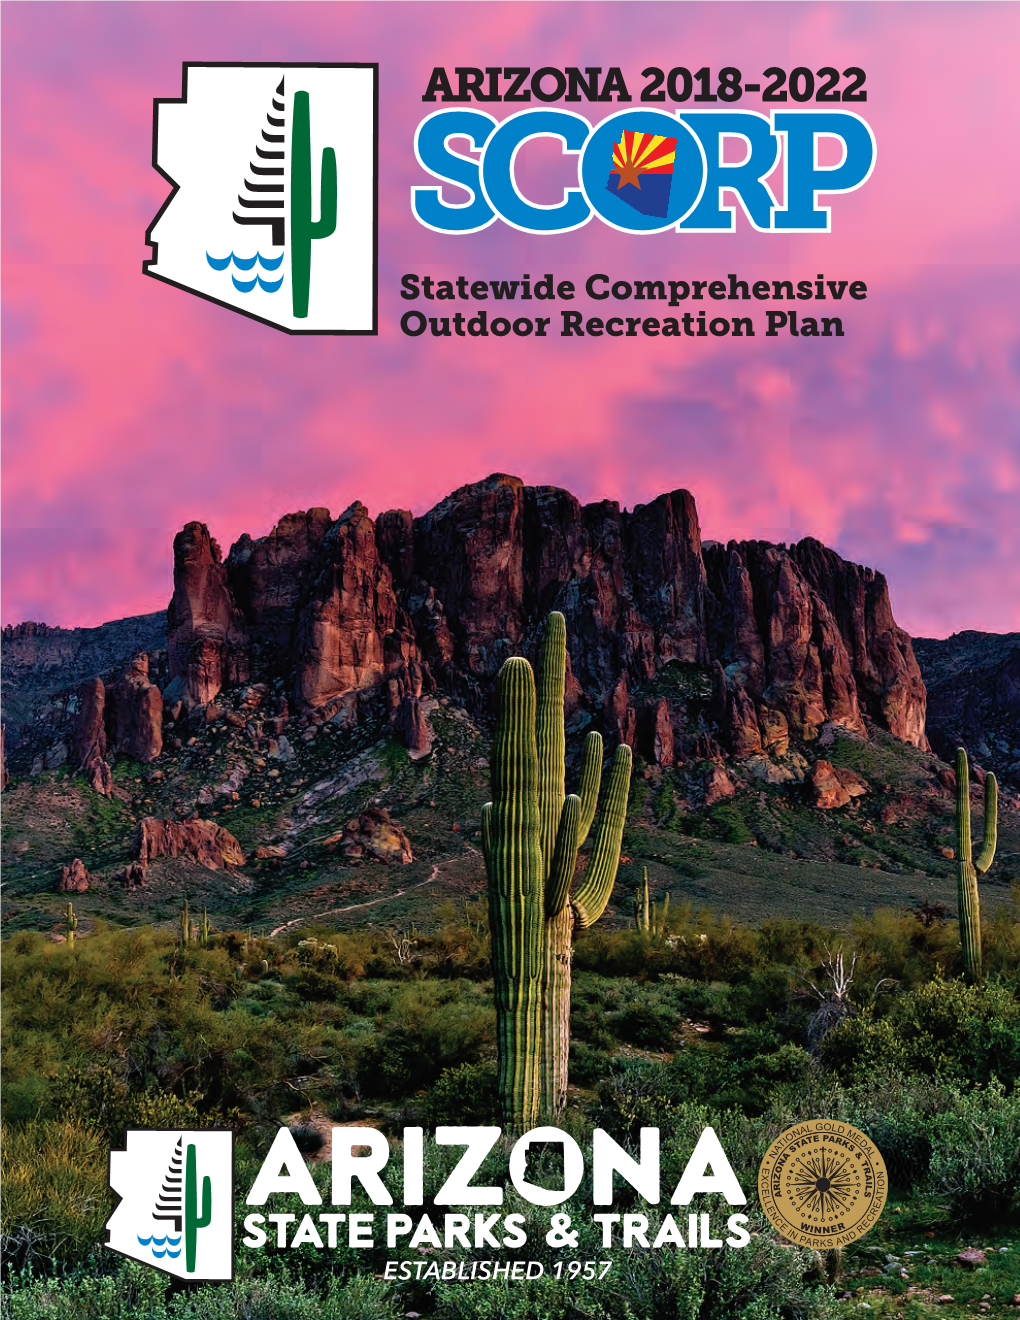 Arizona 2018-2022